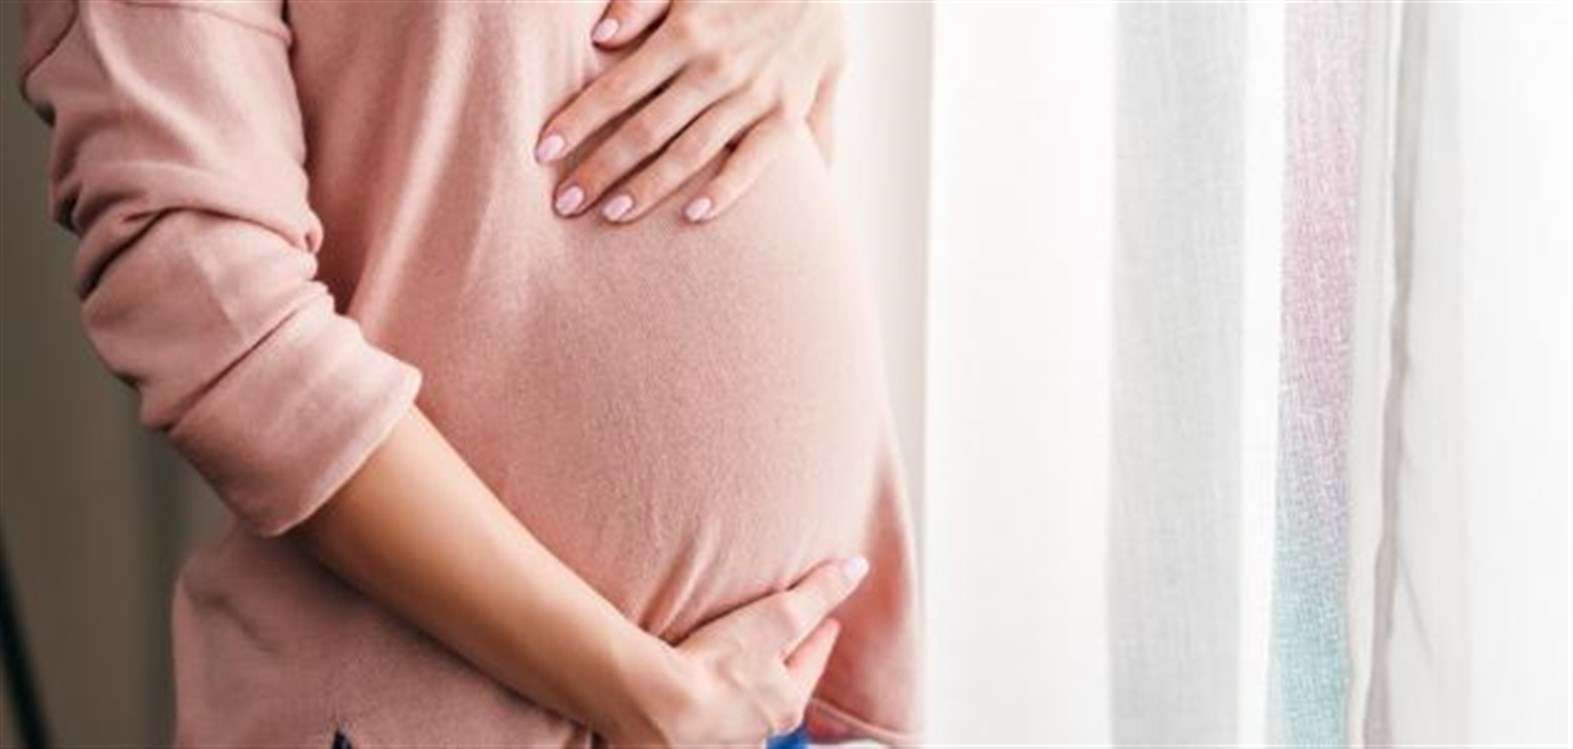 نصائح للحامل في الشهور الأولى وما قبل الولادة